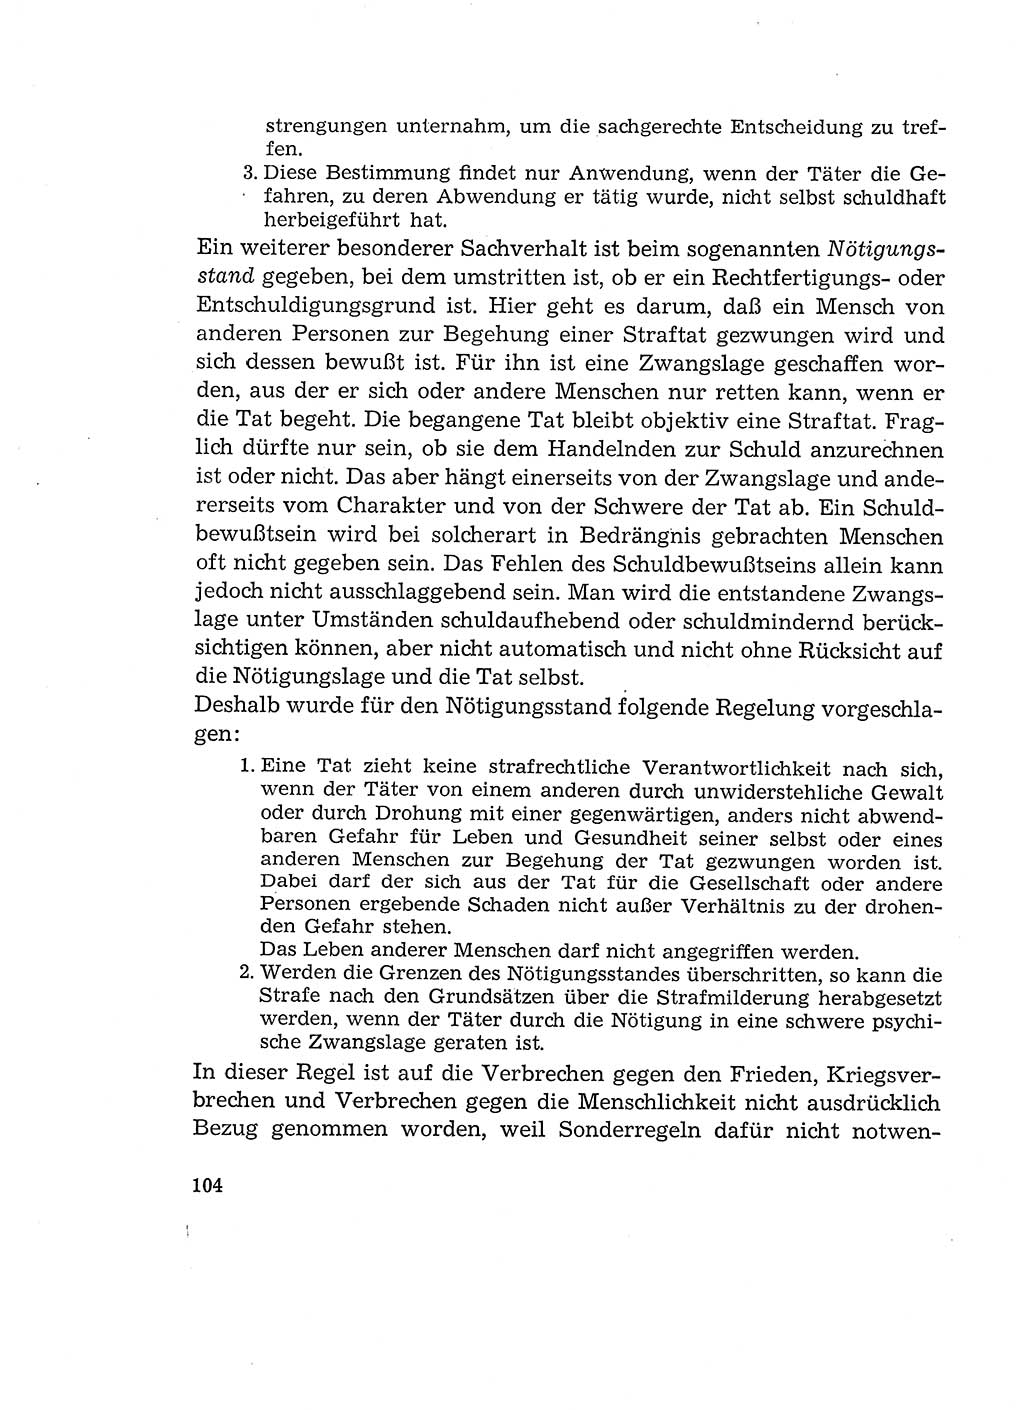 Verantwortung und Schuld im neuen Strafgesetzbuch (StGB) [Deutsche Demokratische Republik (DDR)] 1964, Seite 104 (Verantw. Sch. StGB DDR 1964, S. 104)